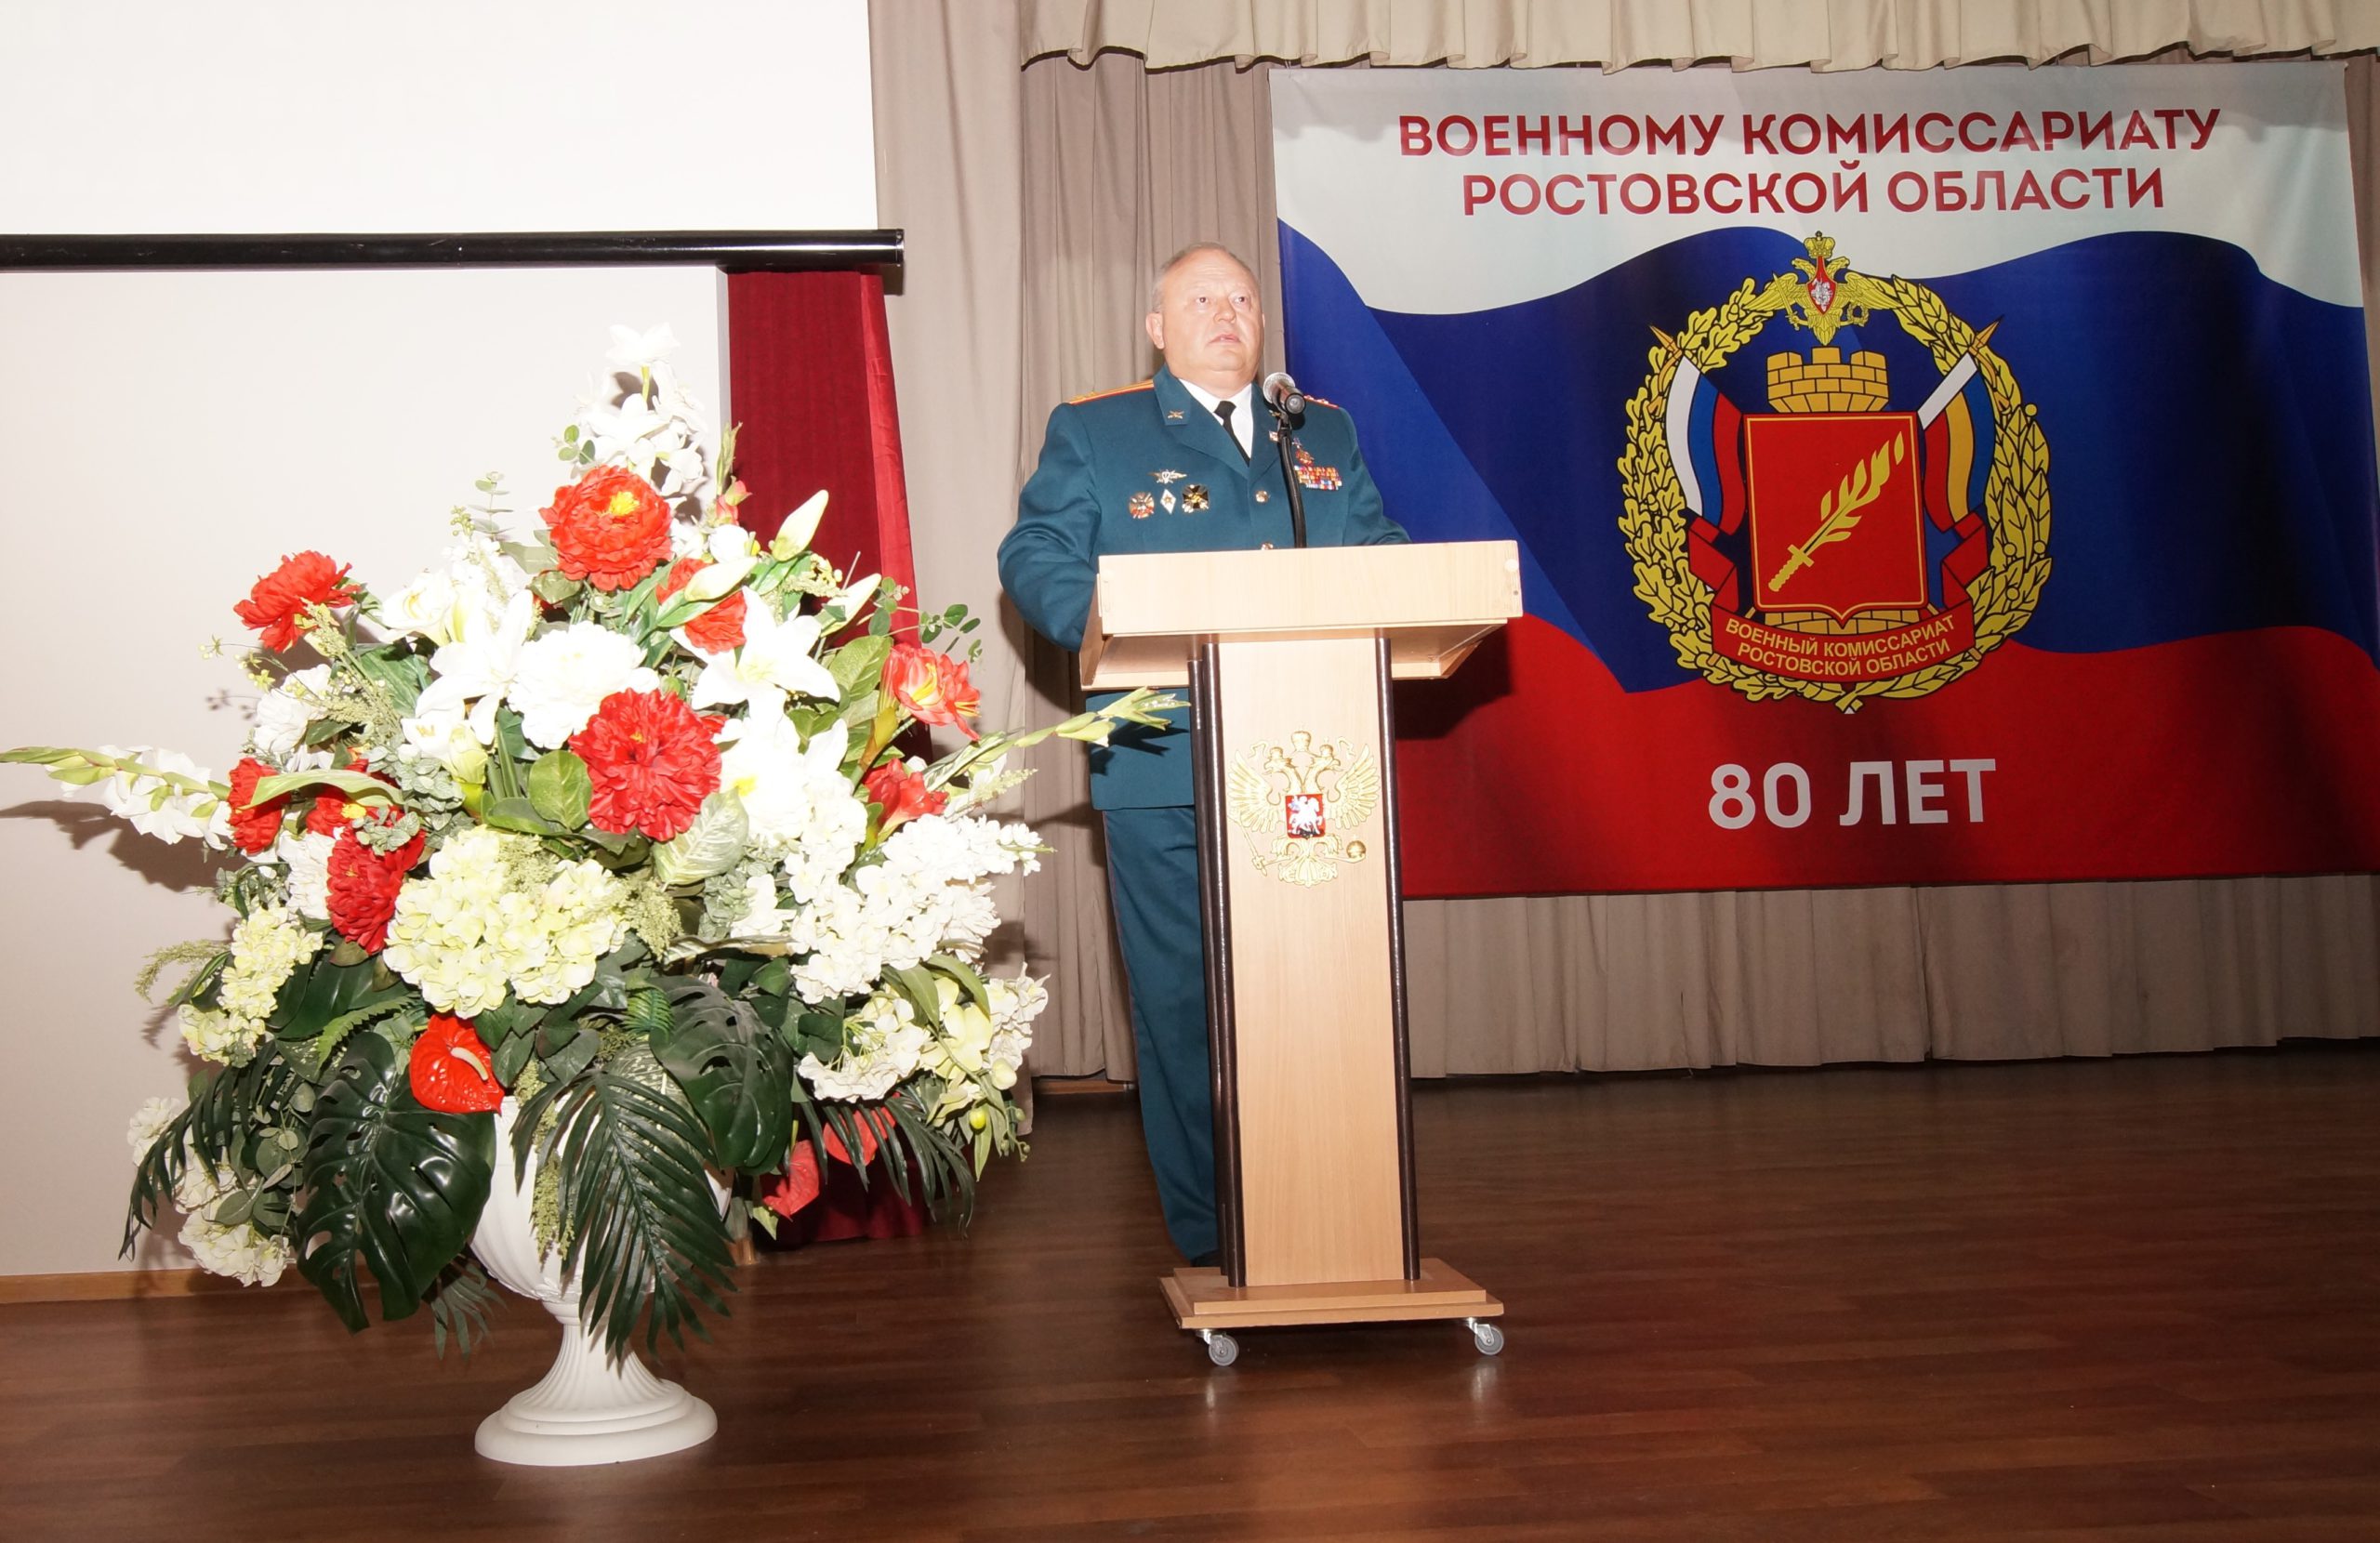 You are currently viewing Мероприятие, посвященное 80-летию военного комиссариата Ростовской области.